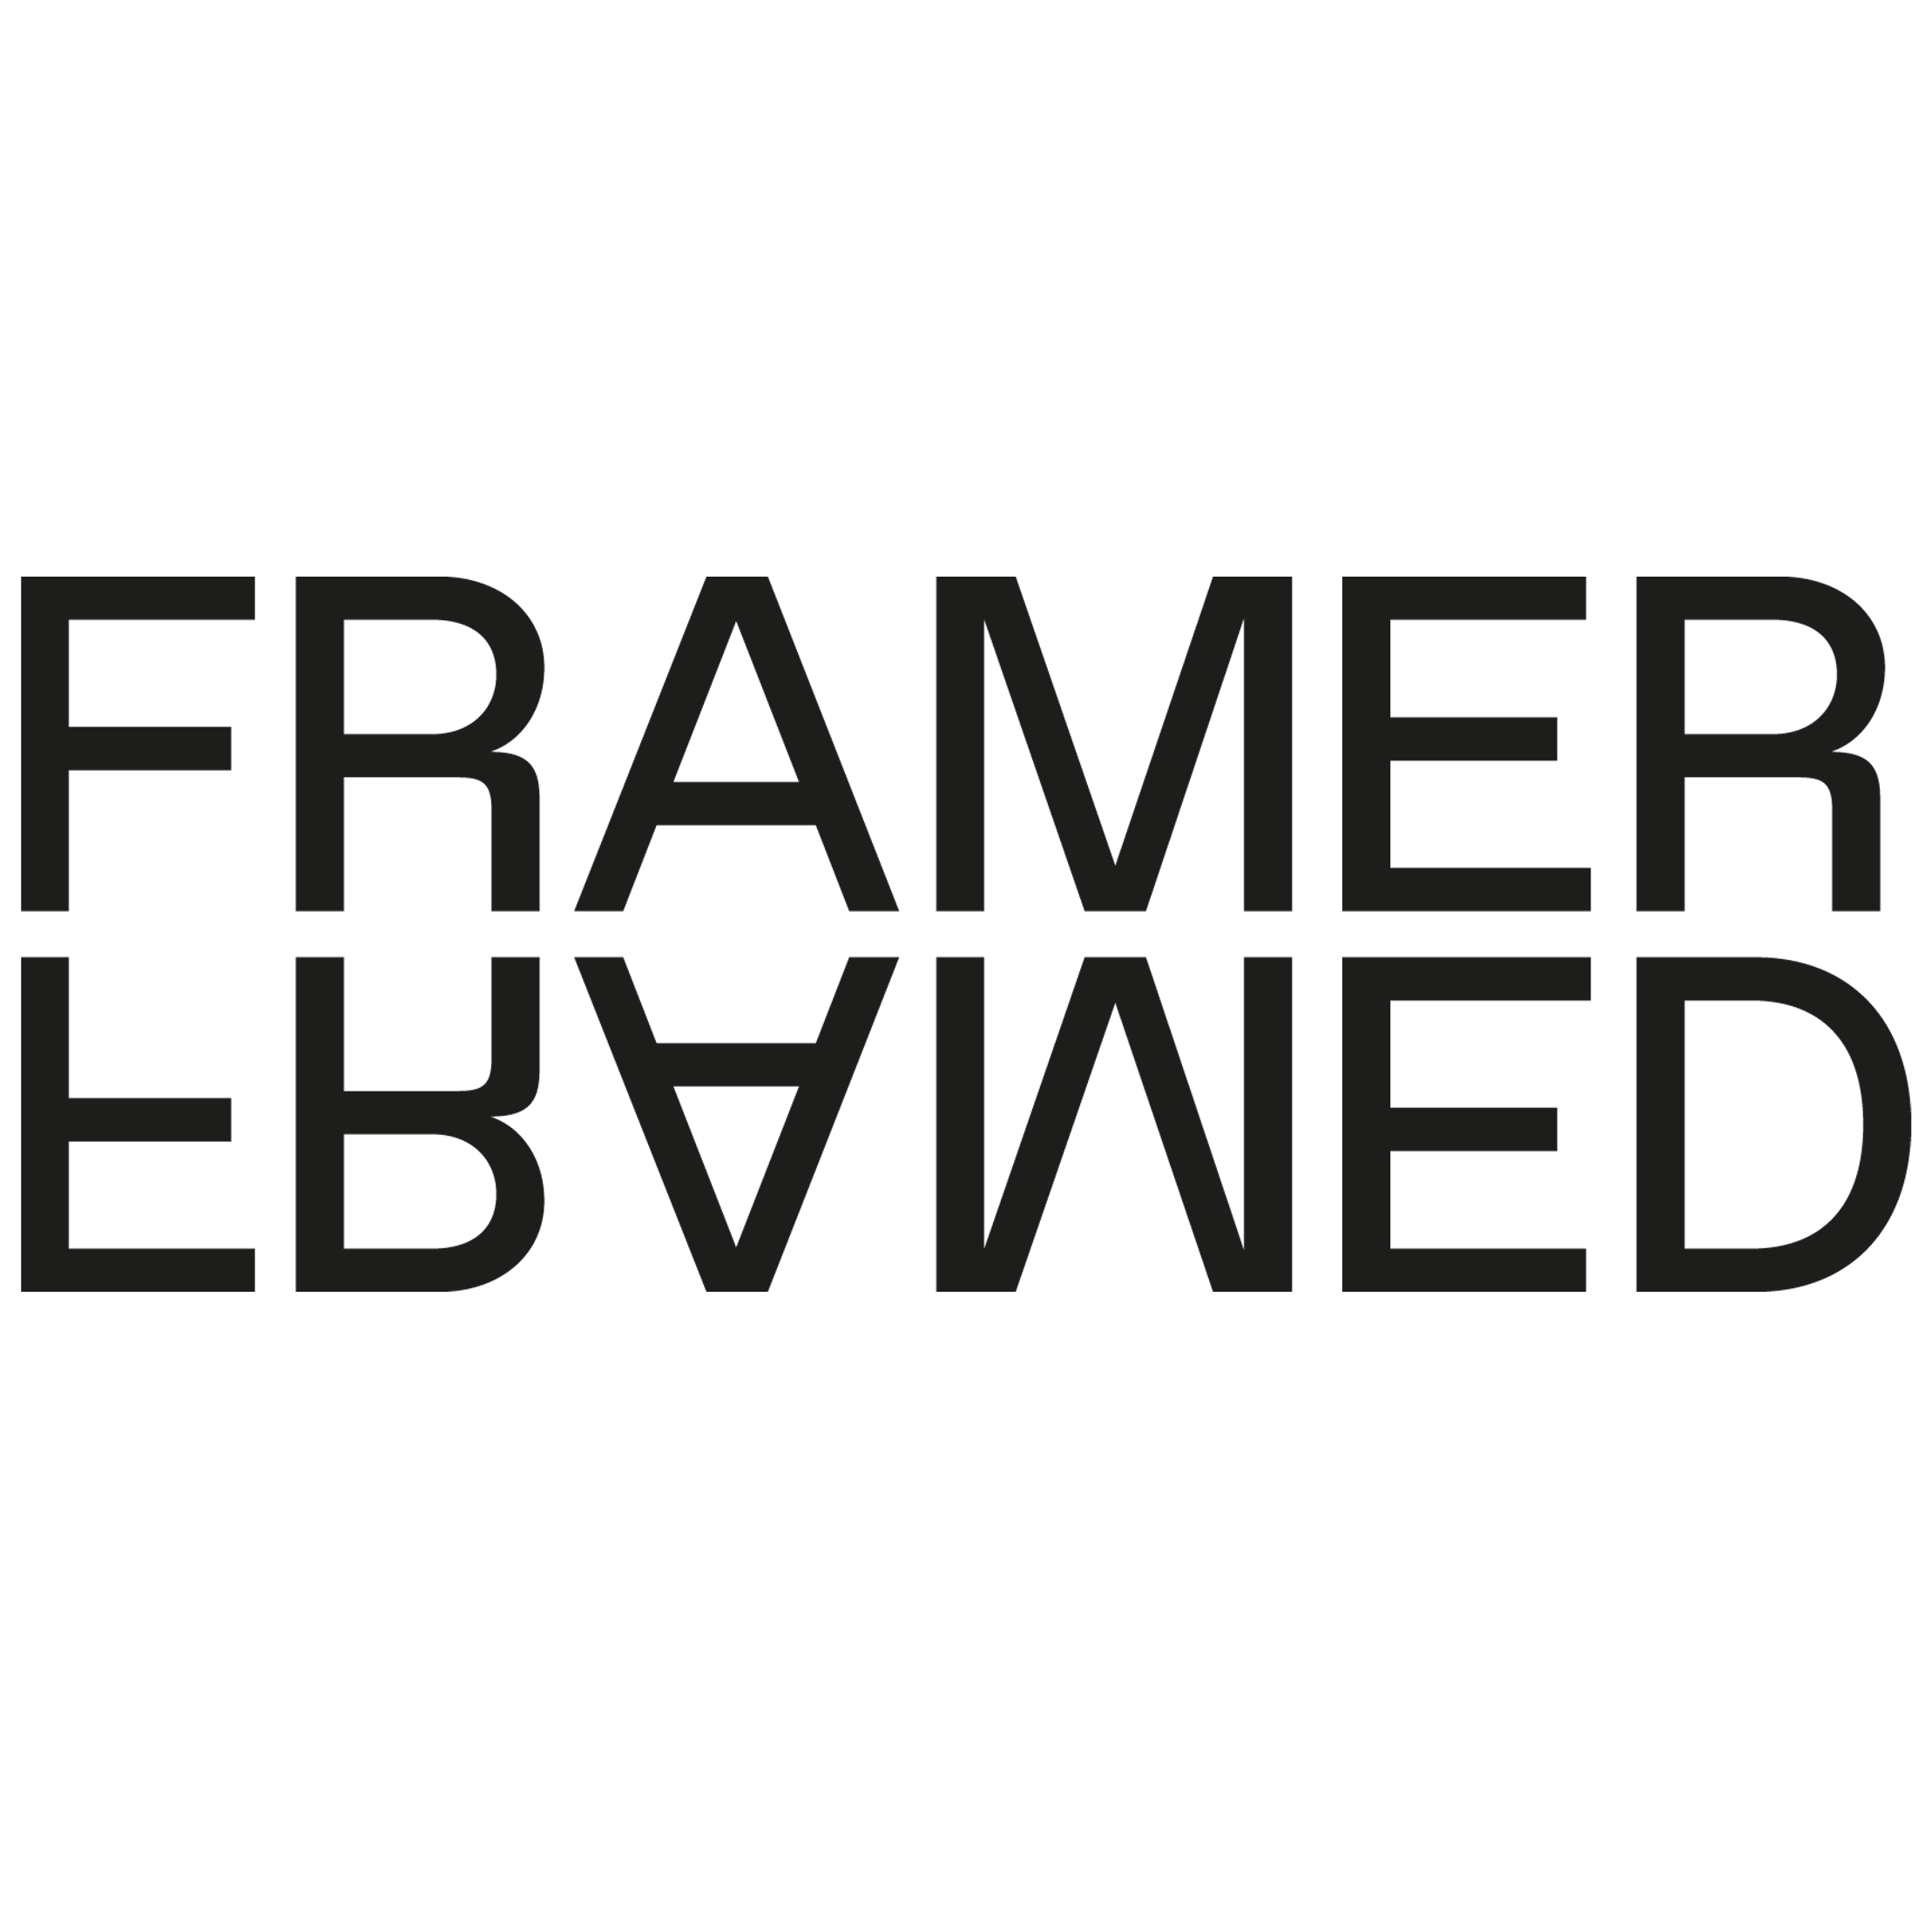 In het zwart de woorden 'Framer Framed' onder elkaar geschreven met de onderste regel verticaal gespiegeld ten opzichte van de bovenste regel